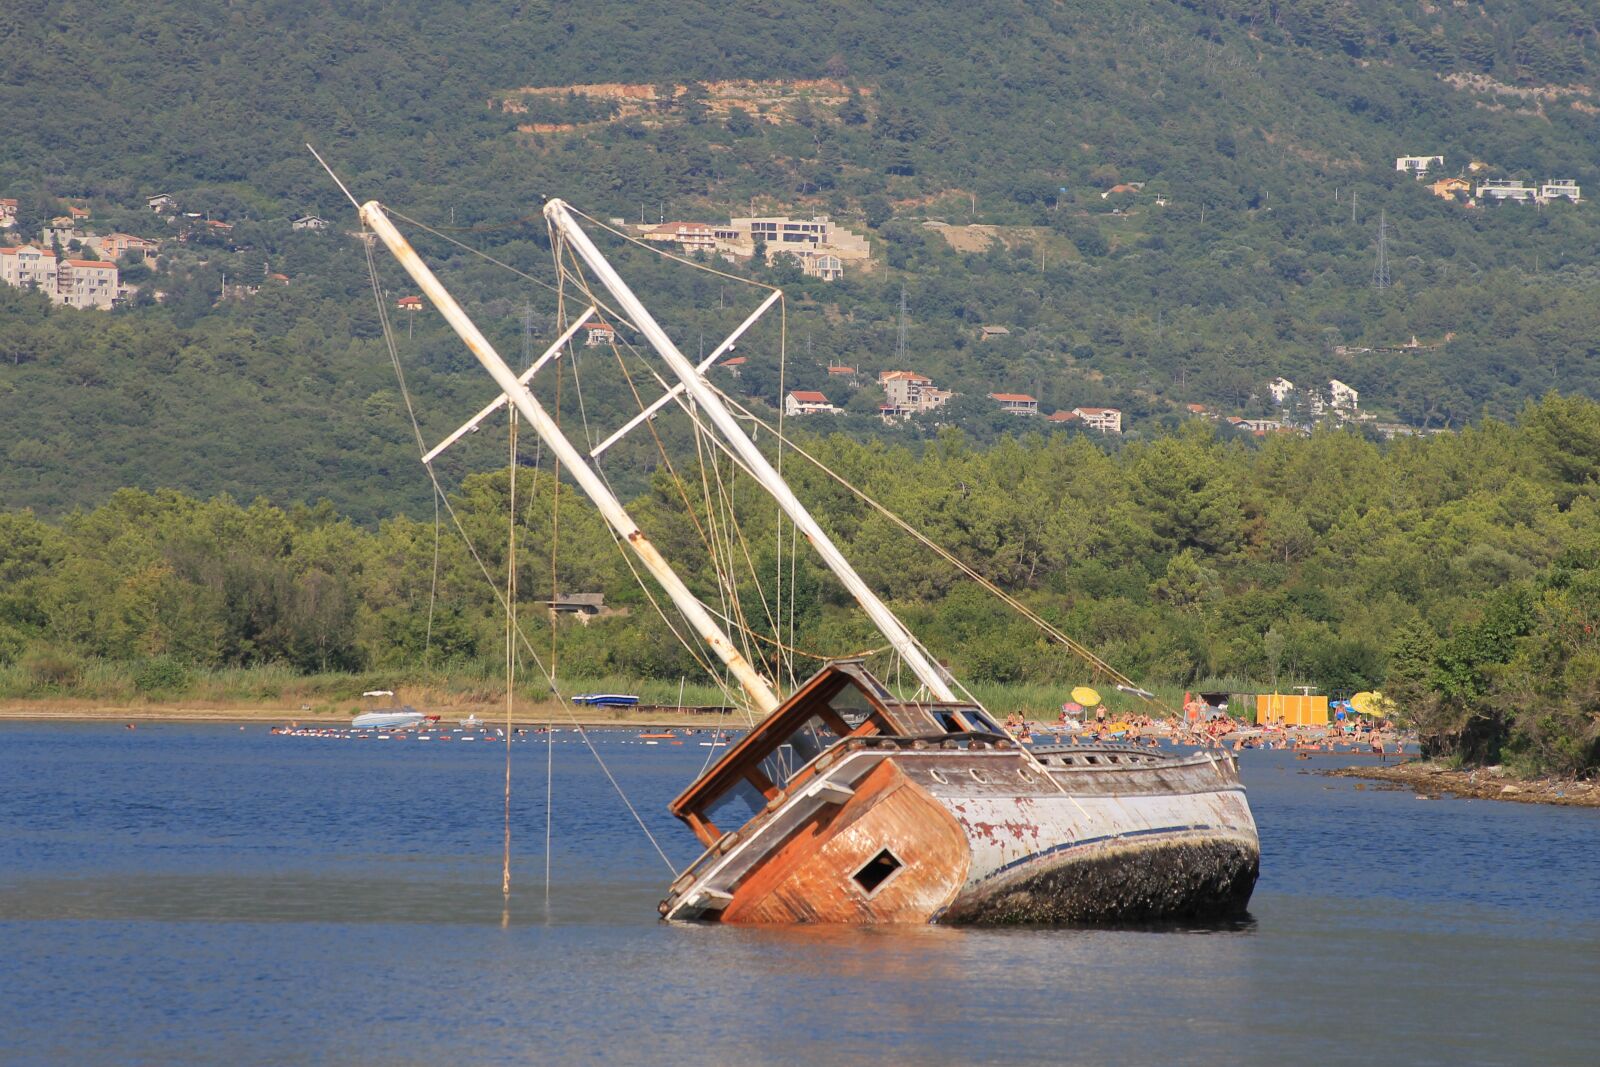 Canon EOS 1100D (EOS Rebel T3 / EOS Kiss X50) sample photo. Shipwreck, sank, ship photography